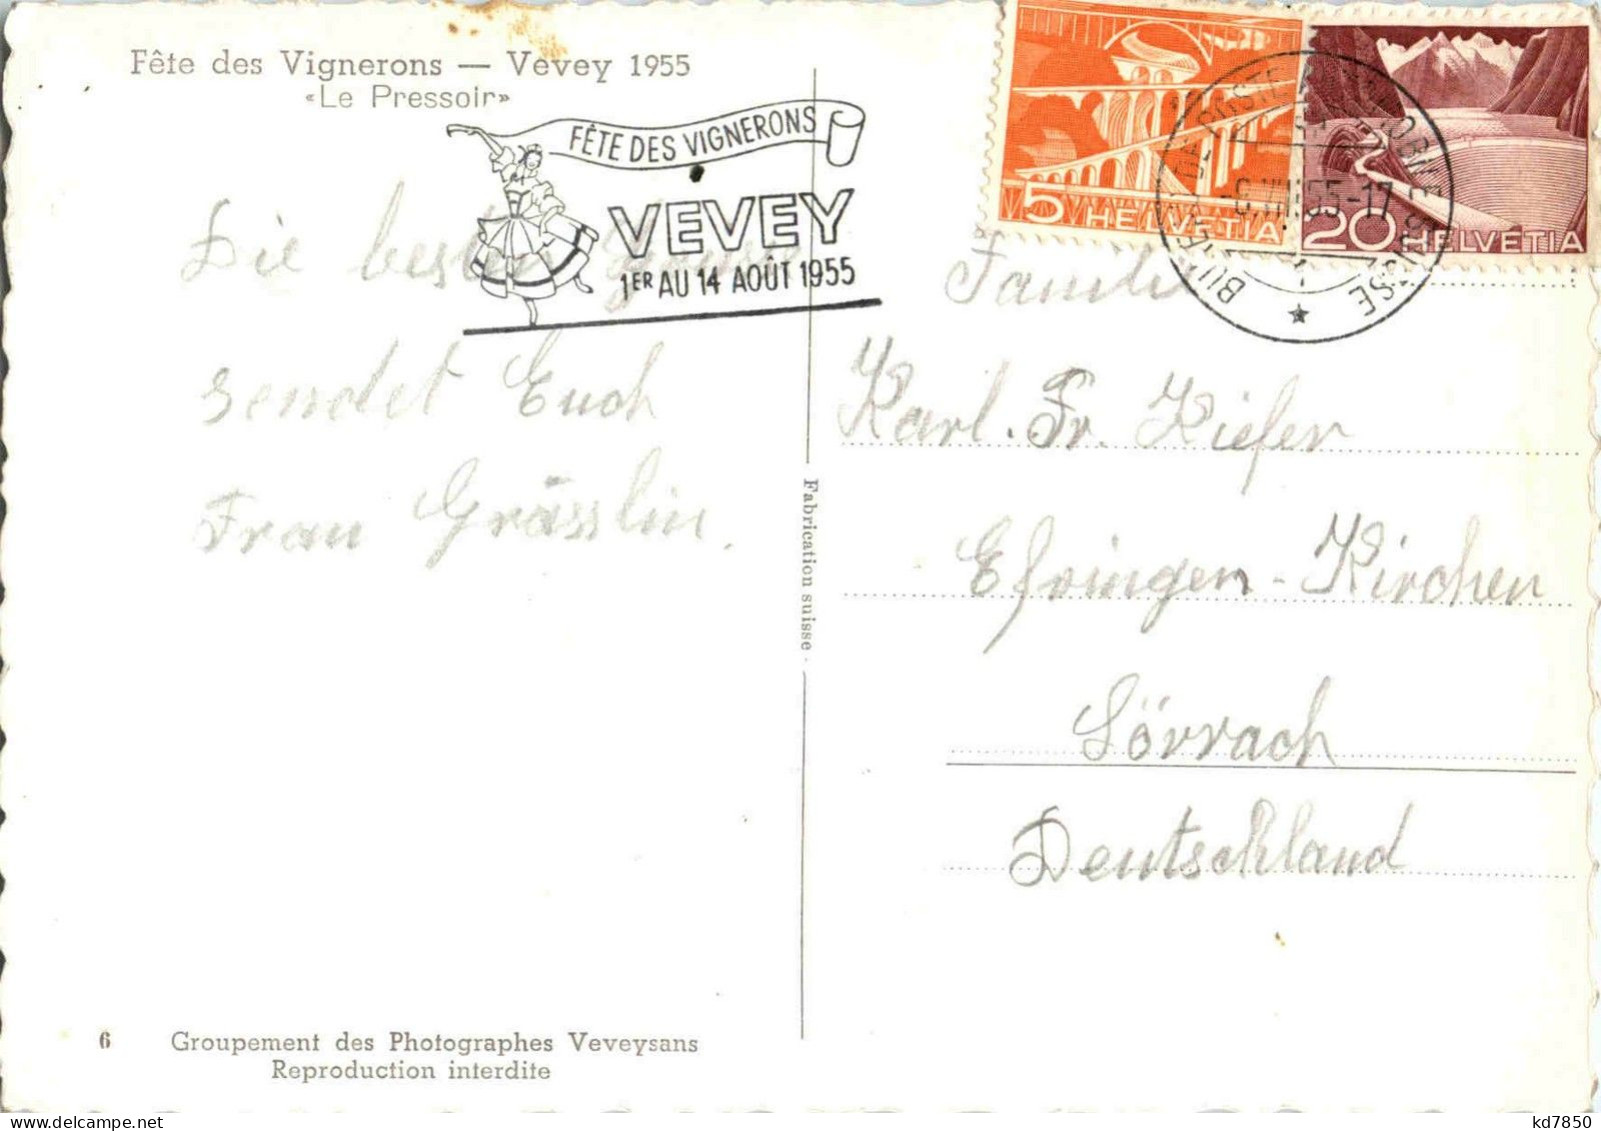 Vevey - Fete Des Vignerons 1955 - Vevey